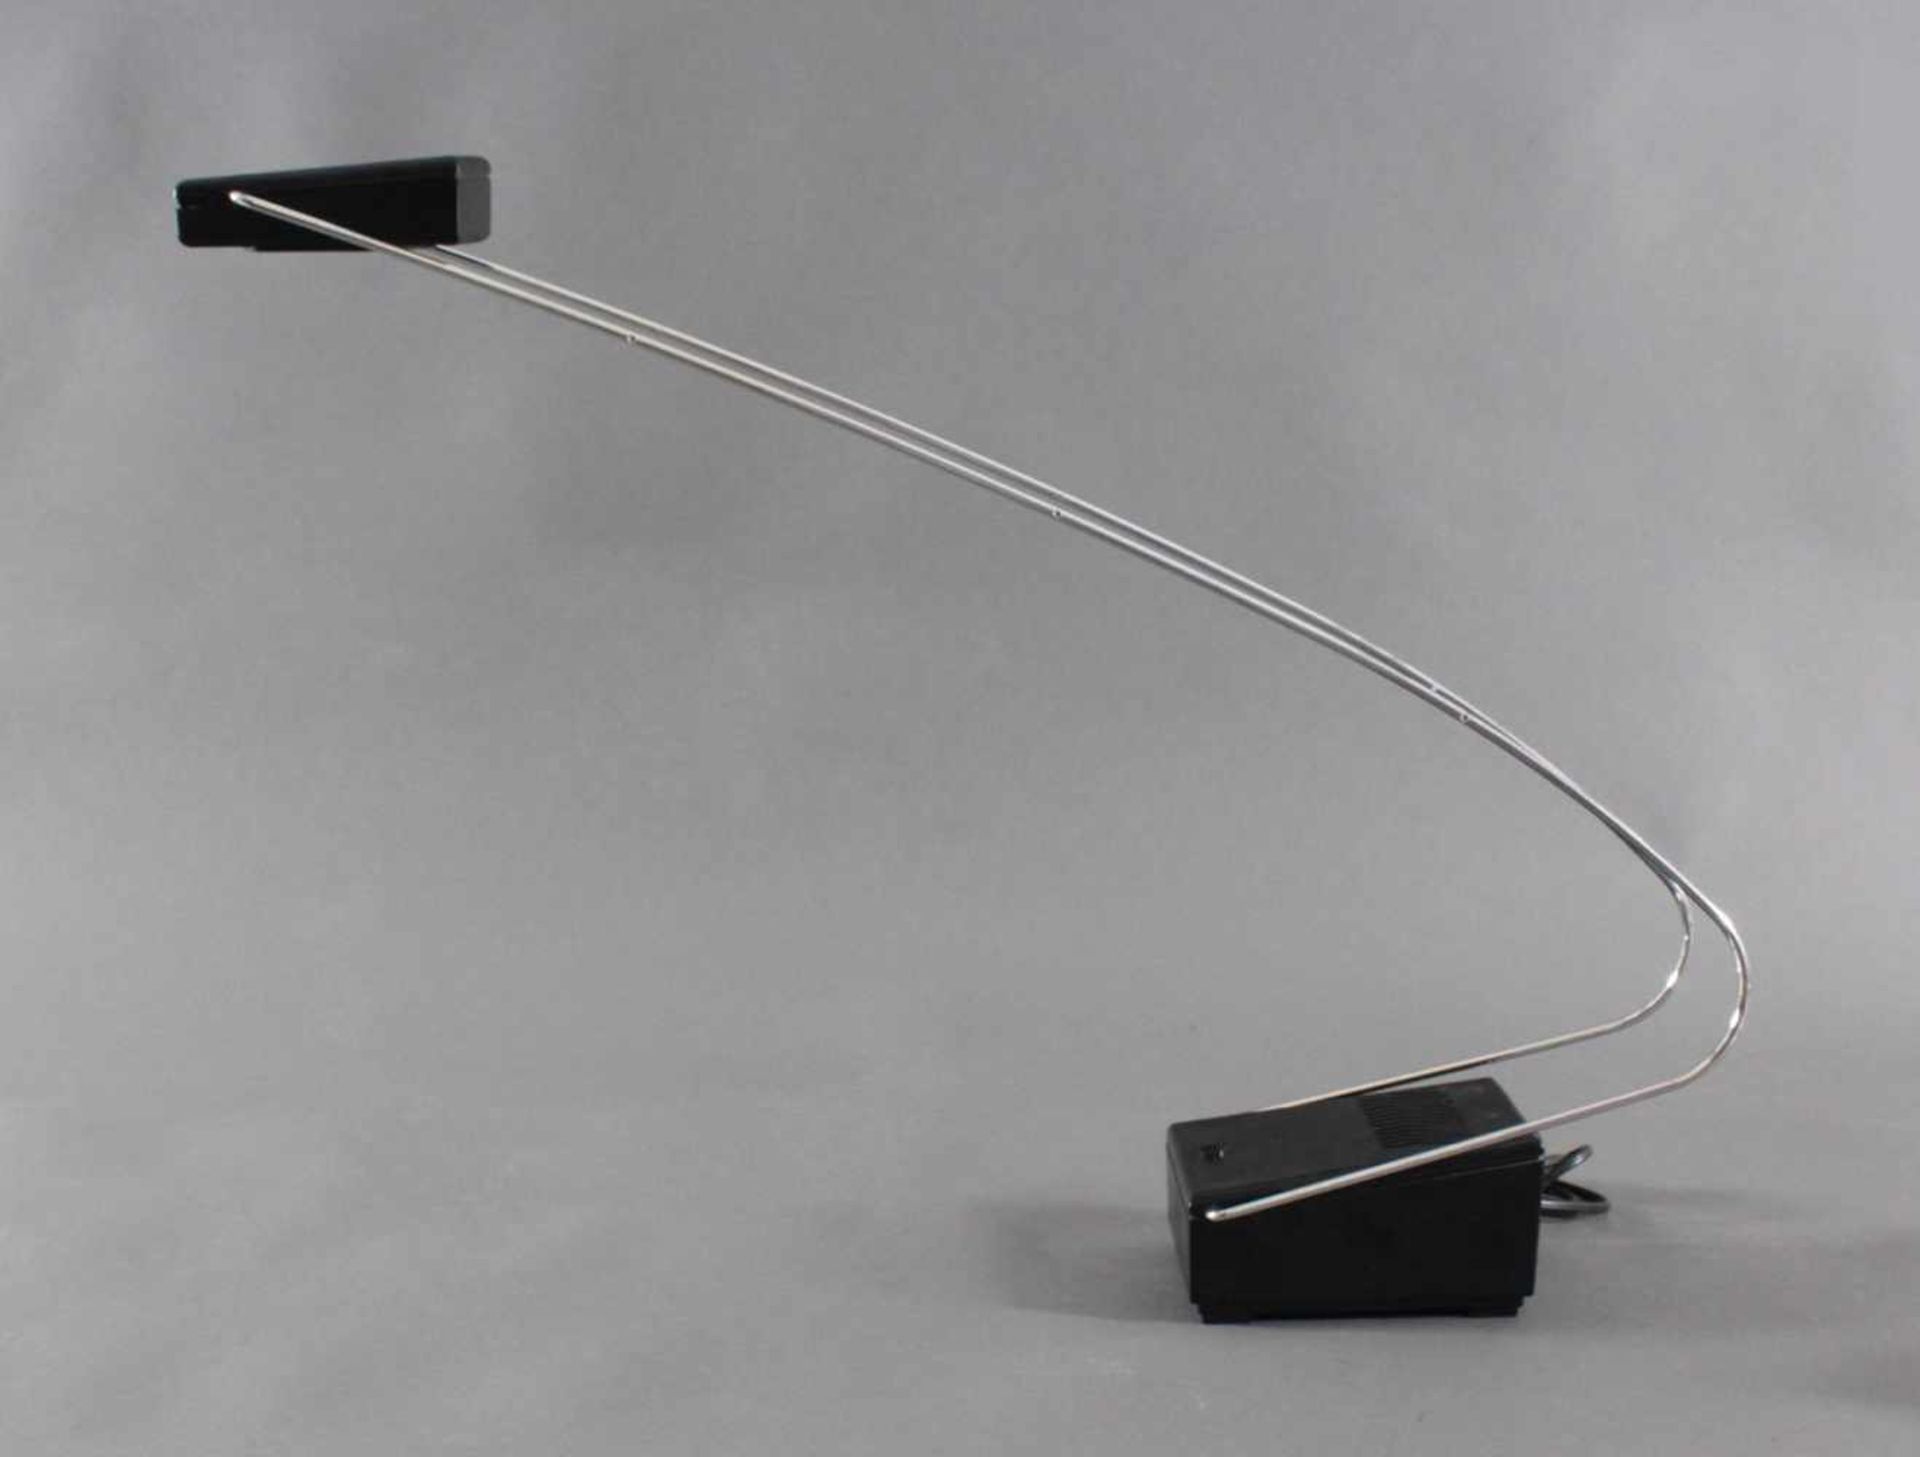 Designer Tischlampe, 80er JahreKunststoff/Metall. Lampe mit Halogen Beleuchtung, ca. H-52 cm.